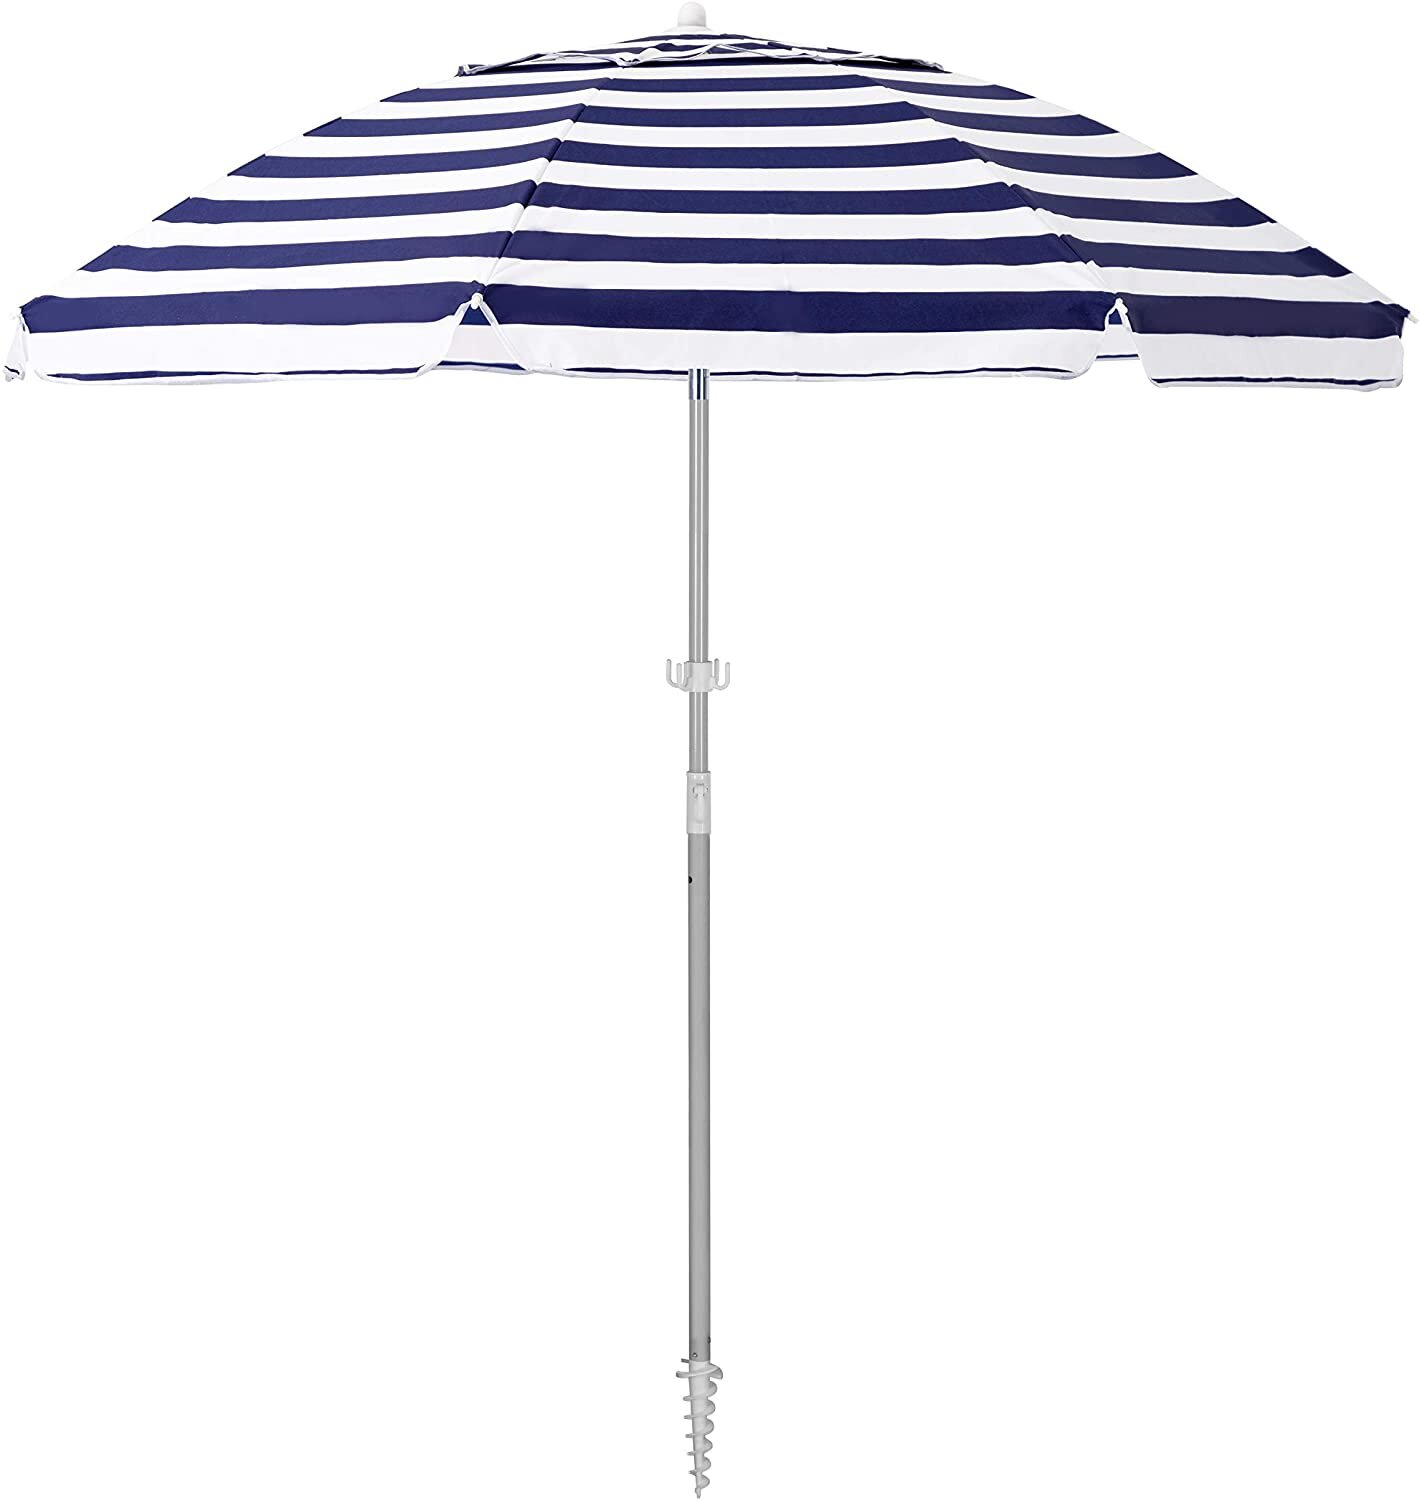 SERWALL 6.5FT Beach Umbrella UV 50+ Outdoor Portable Sunshade Umbrella with Sand Anchor, Push Button Tilt and Carry Bag for Patio Outdoor Garden Beach (Navy-White Stripe) - Amazon.jpg